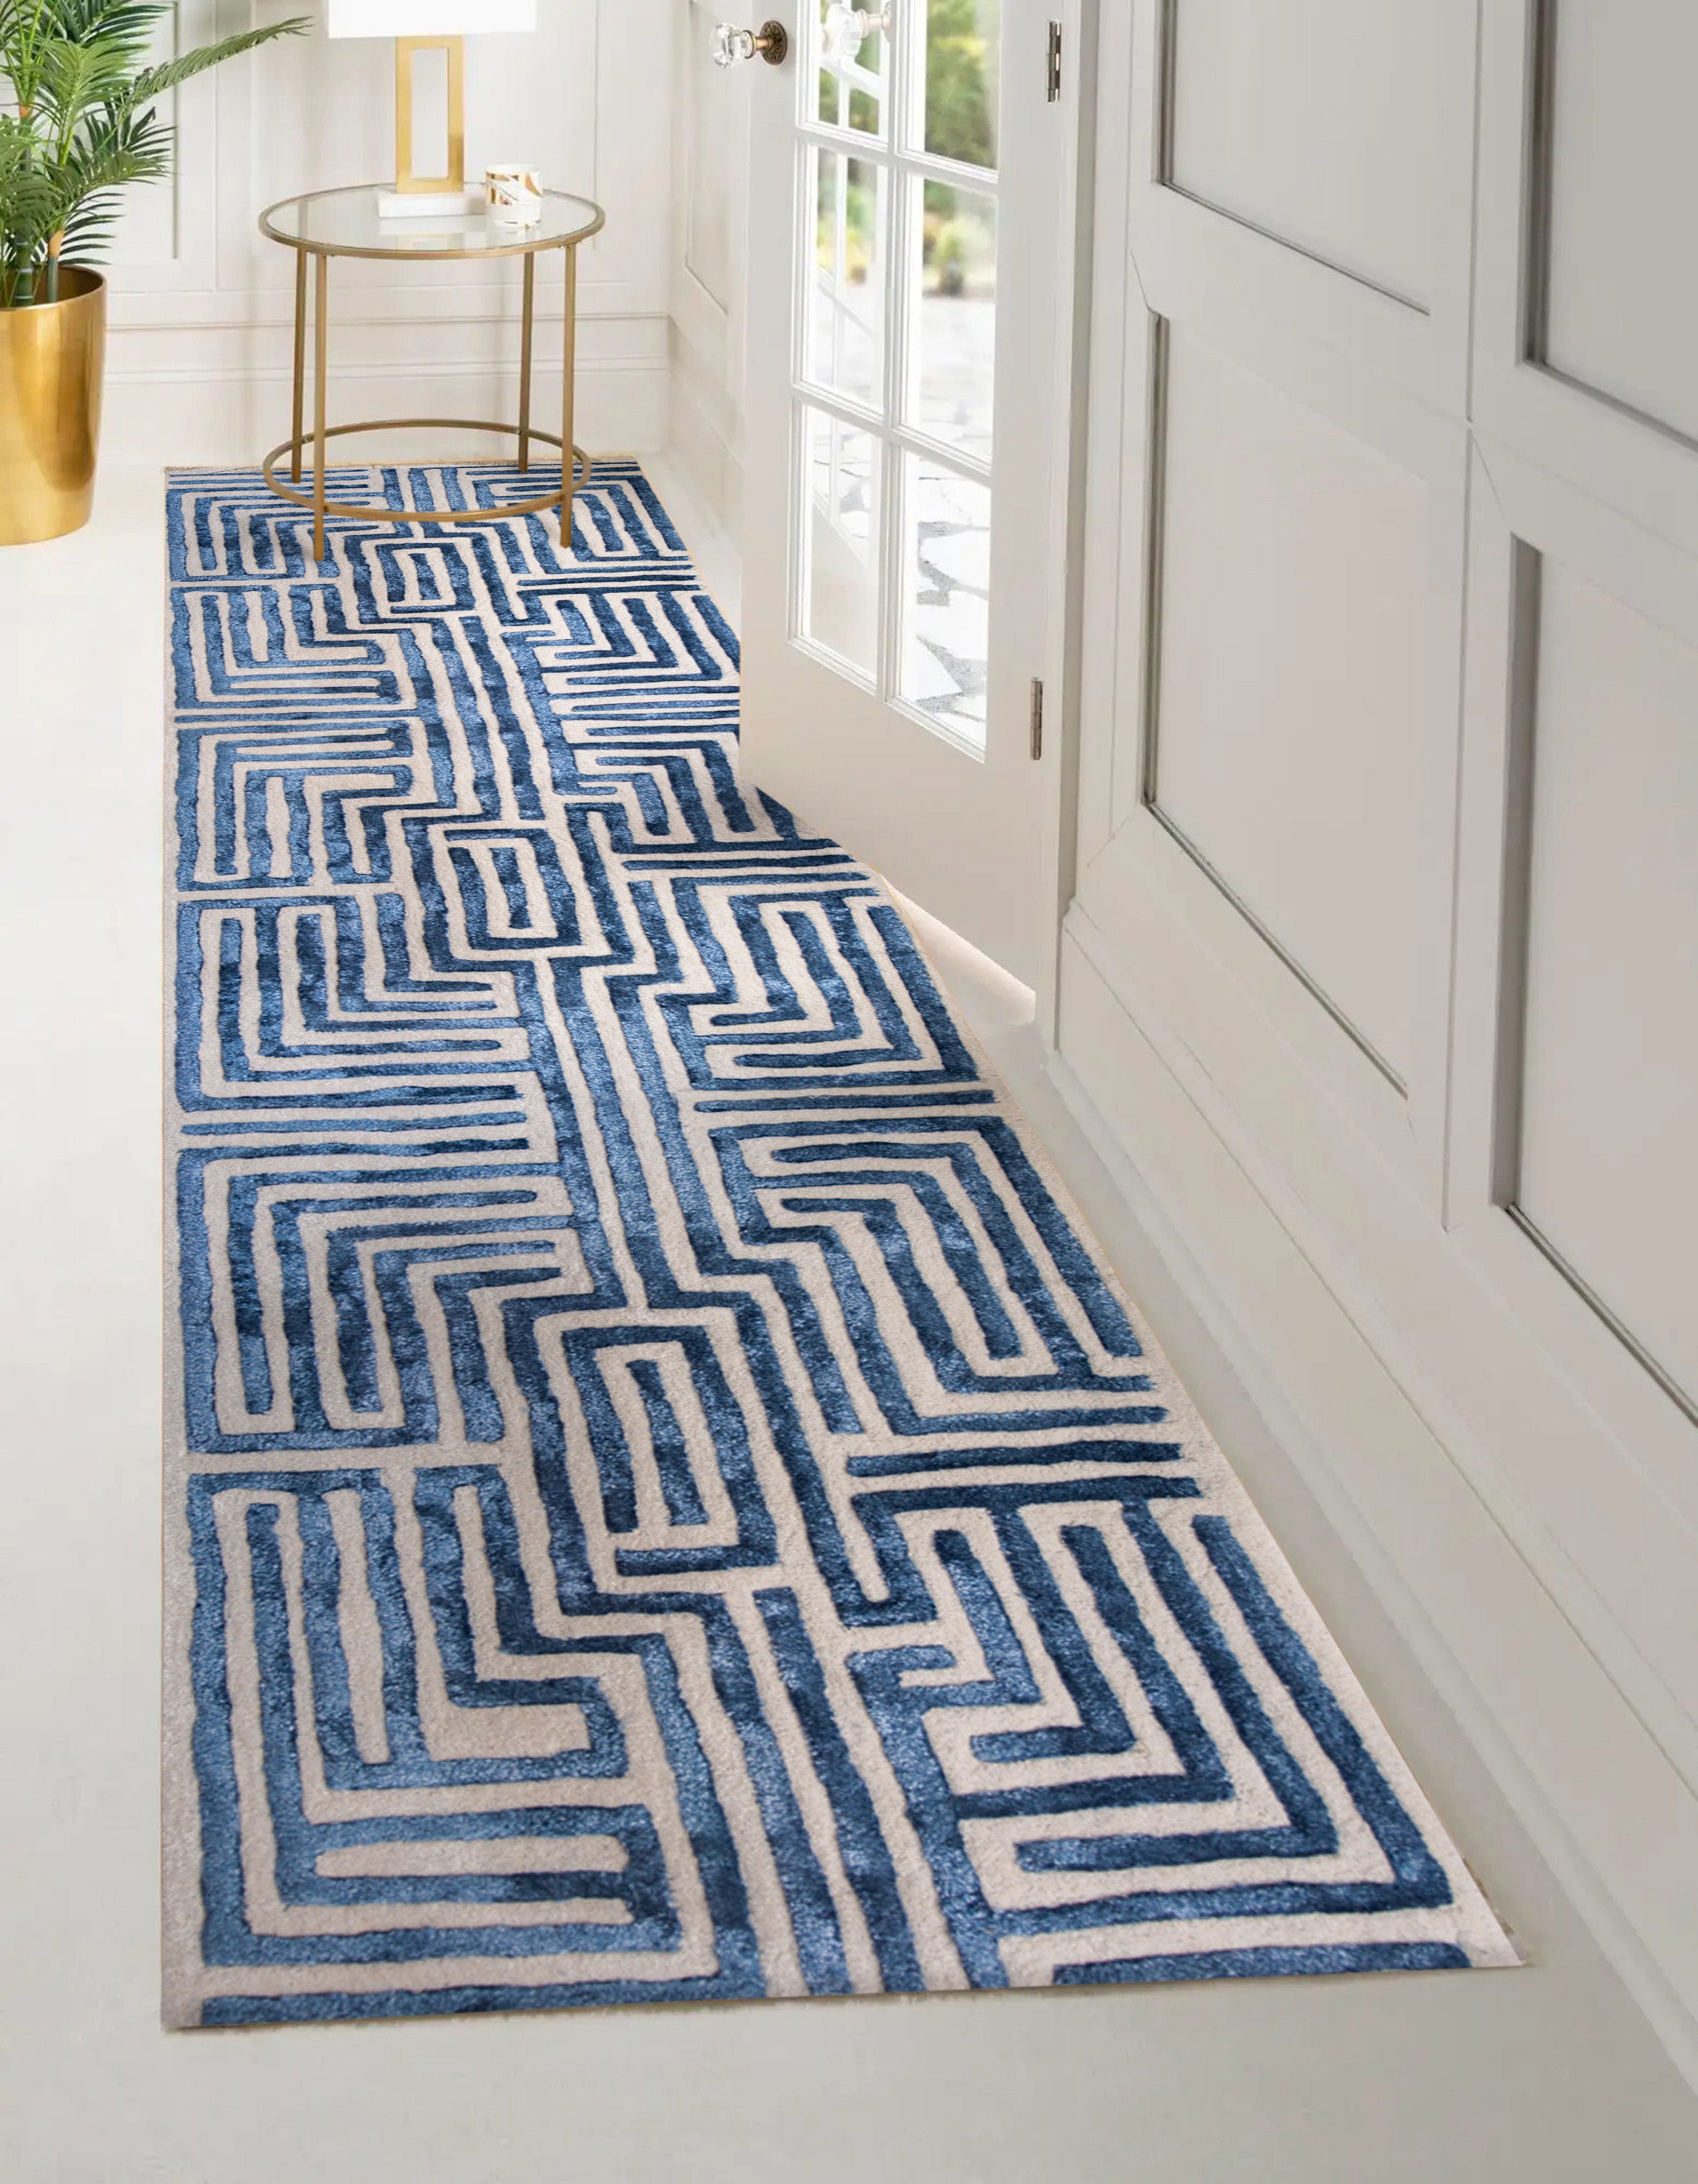 Knossos Hand-Tufted Maze Rug by Kevin Francis Design | Atlanta Interior Designer | Luxury Home Decor